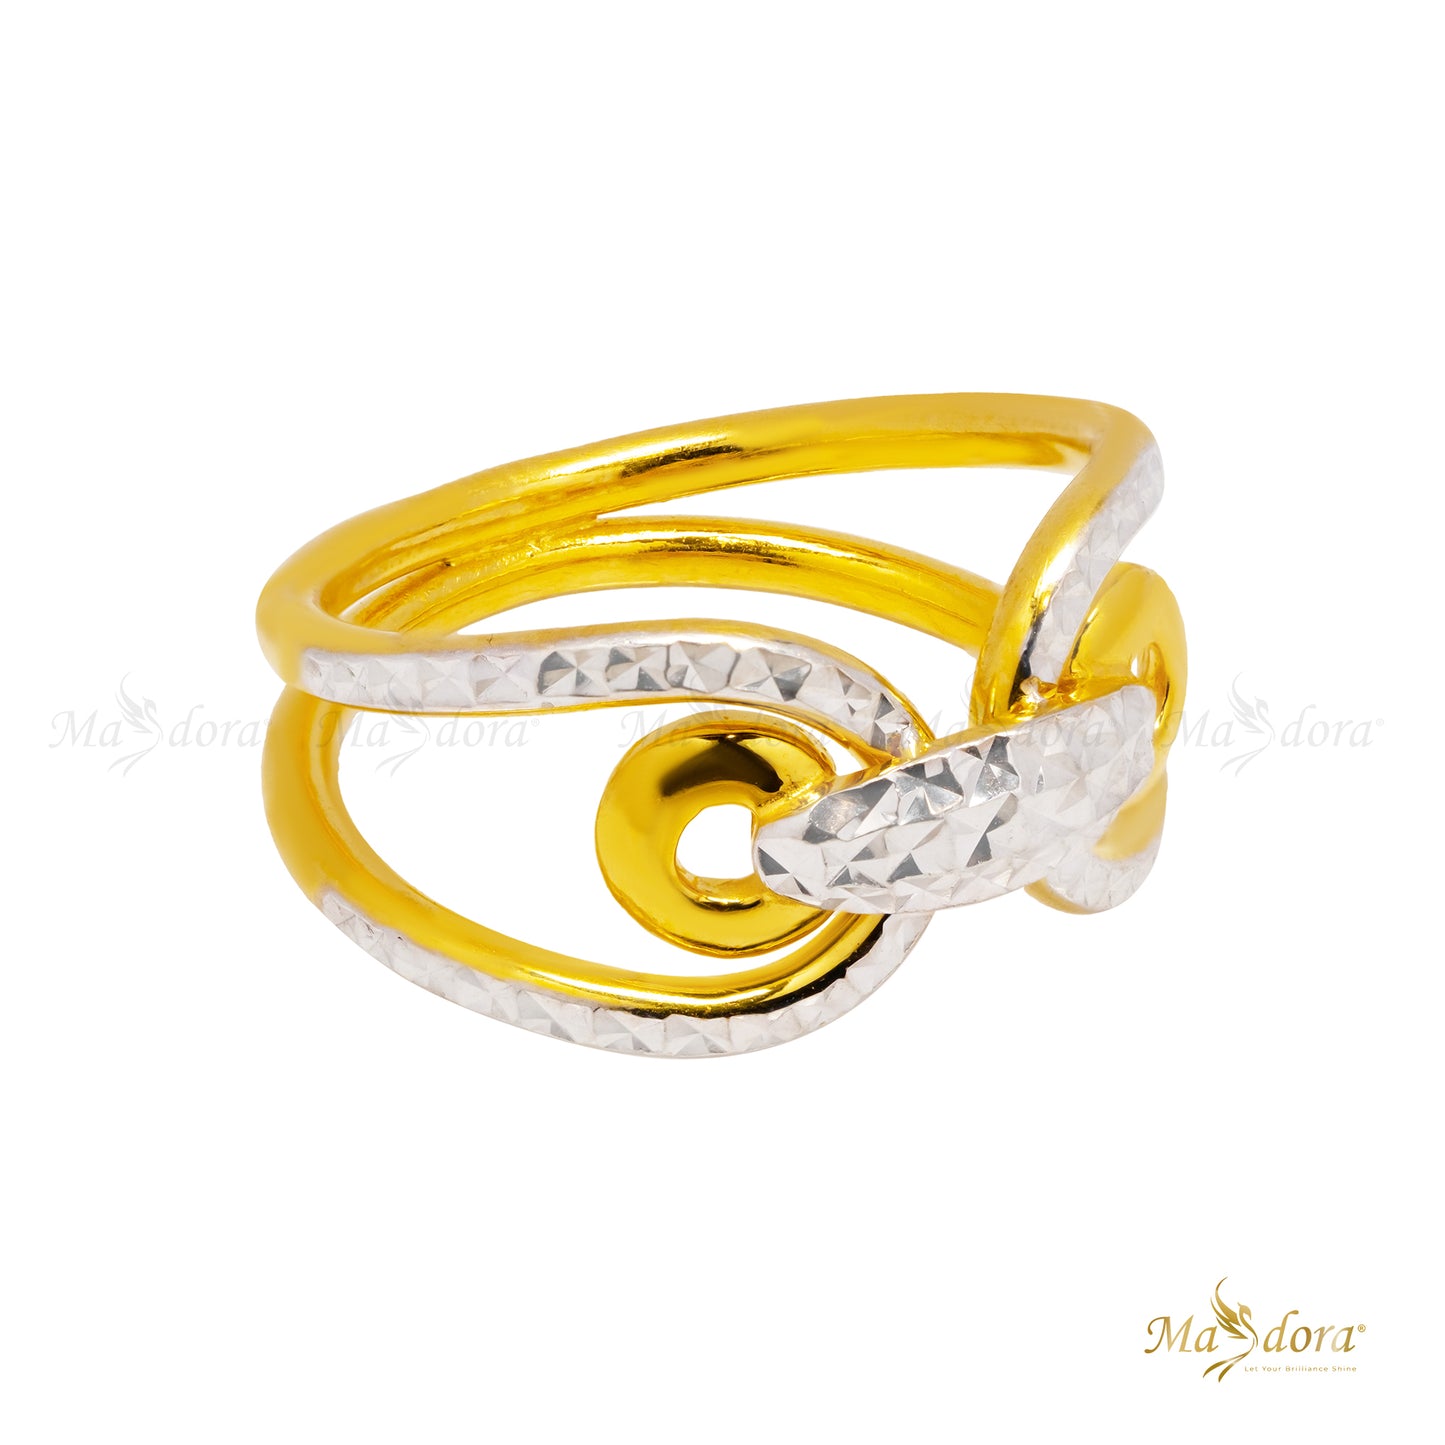 MASDORA Cincin Emas Exclusive Italy Fashion/Exclusive Italy Fashion Ring (Emas 916)